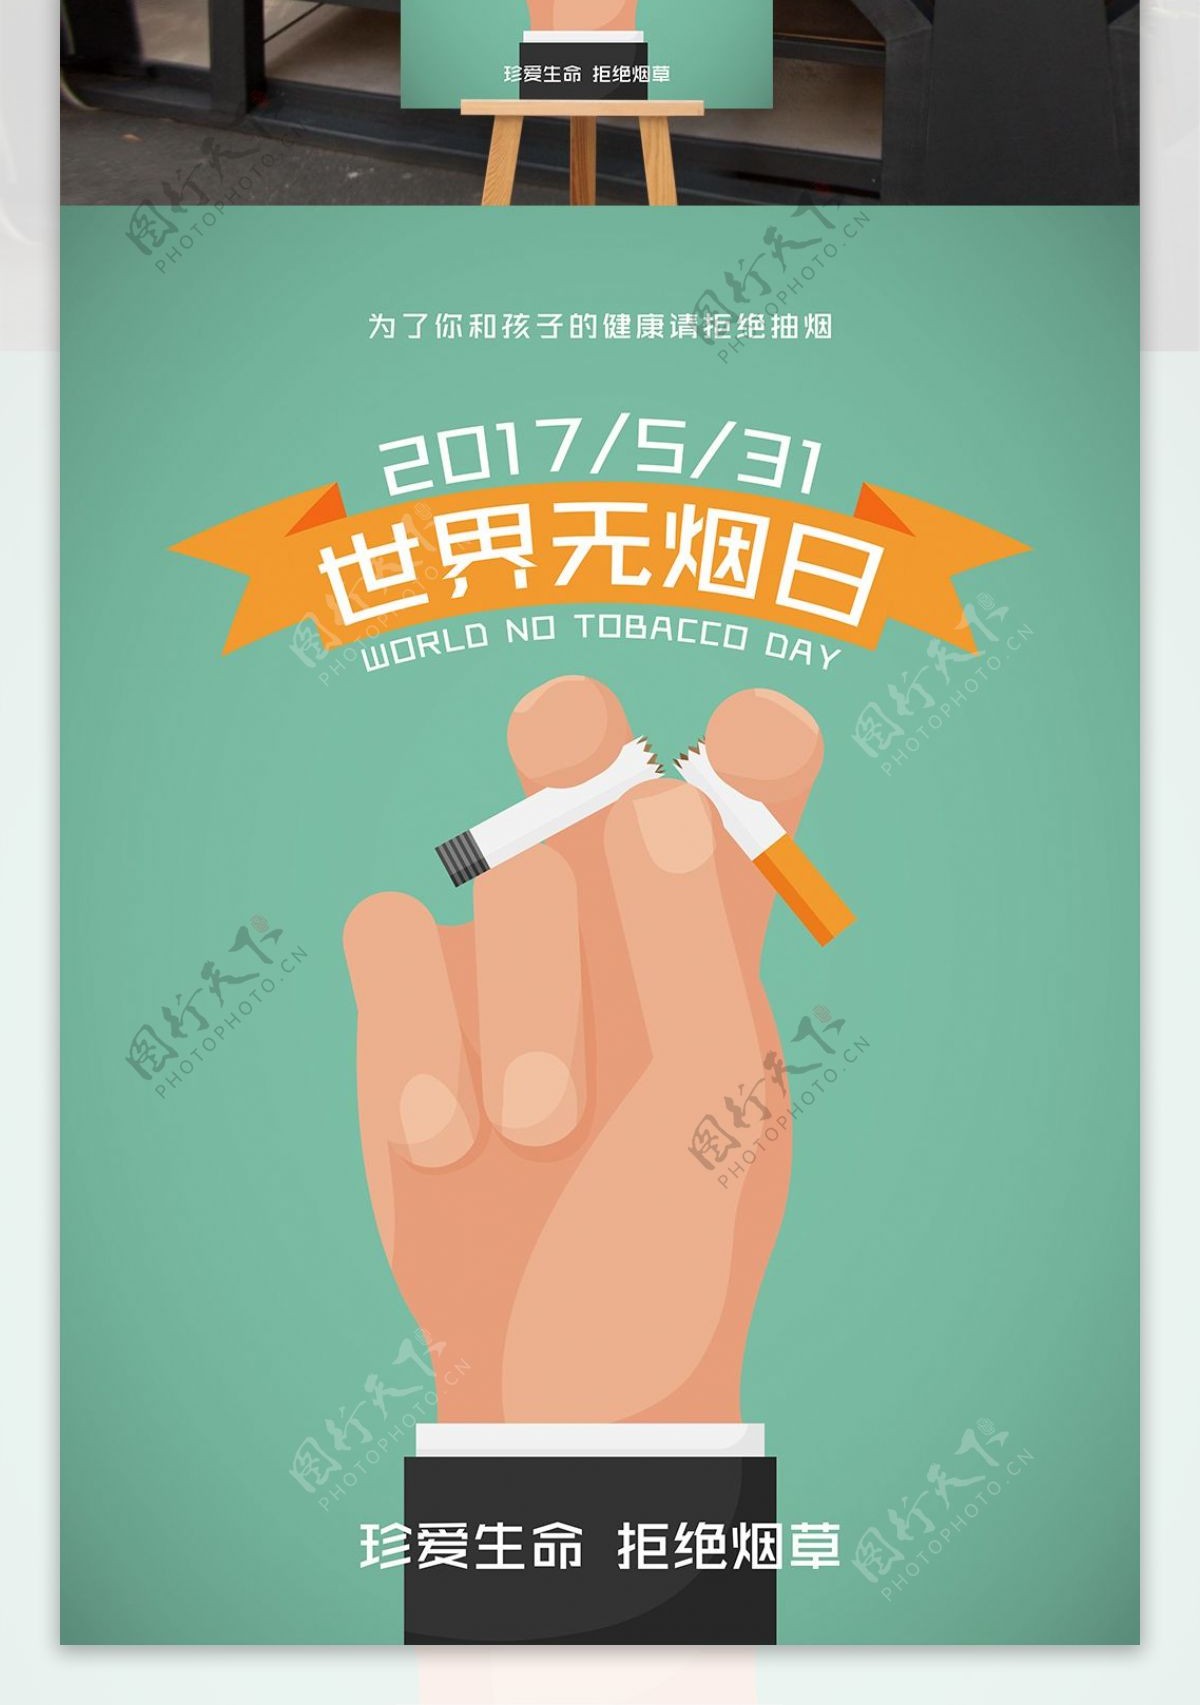 世界无烟日禁烟宣传海报